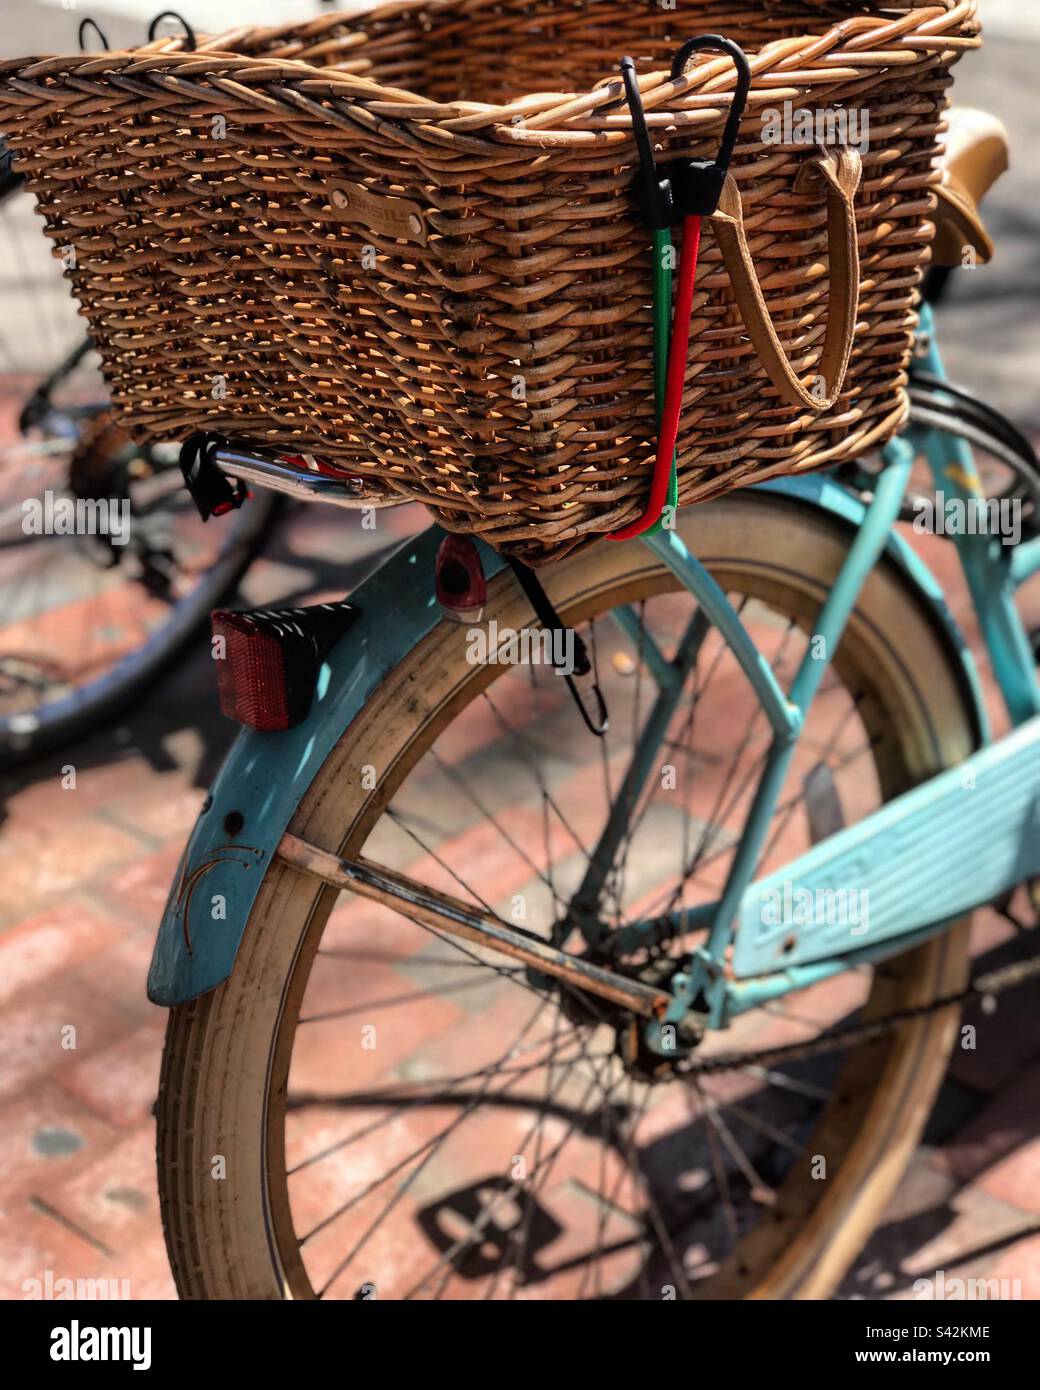 Artisan Bike Basket